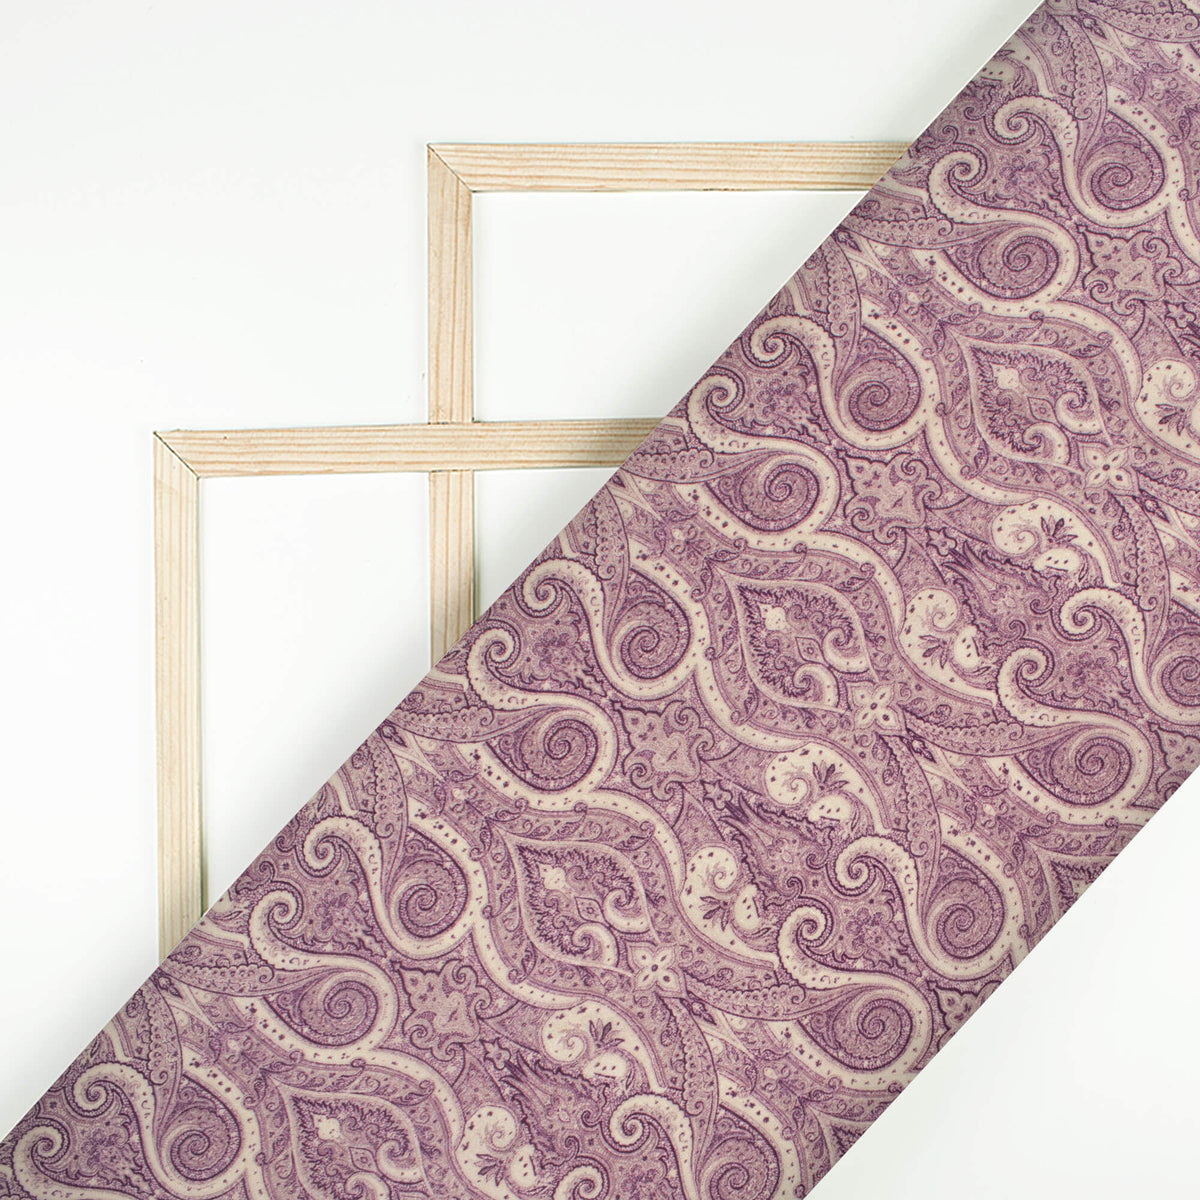 Dusty Purple And Smoke White Ethnic Pattern Digital Print Viscose Uppada Silk Fabric